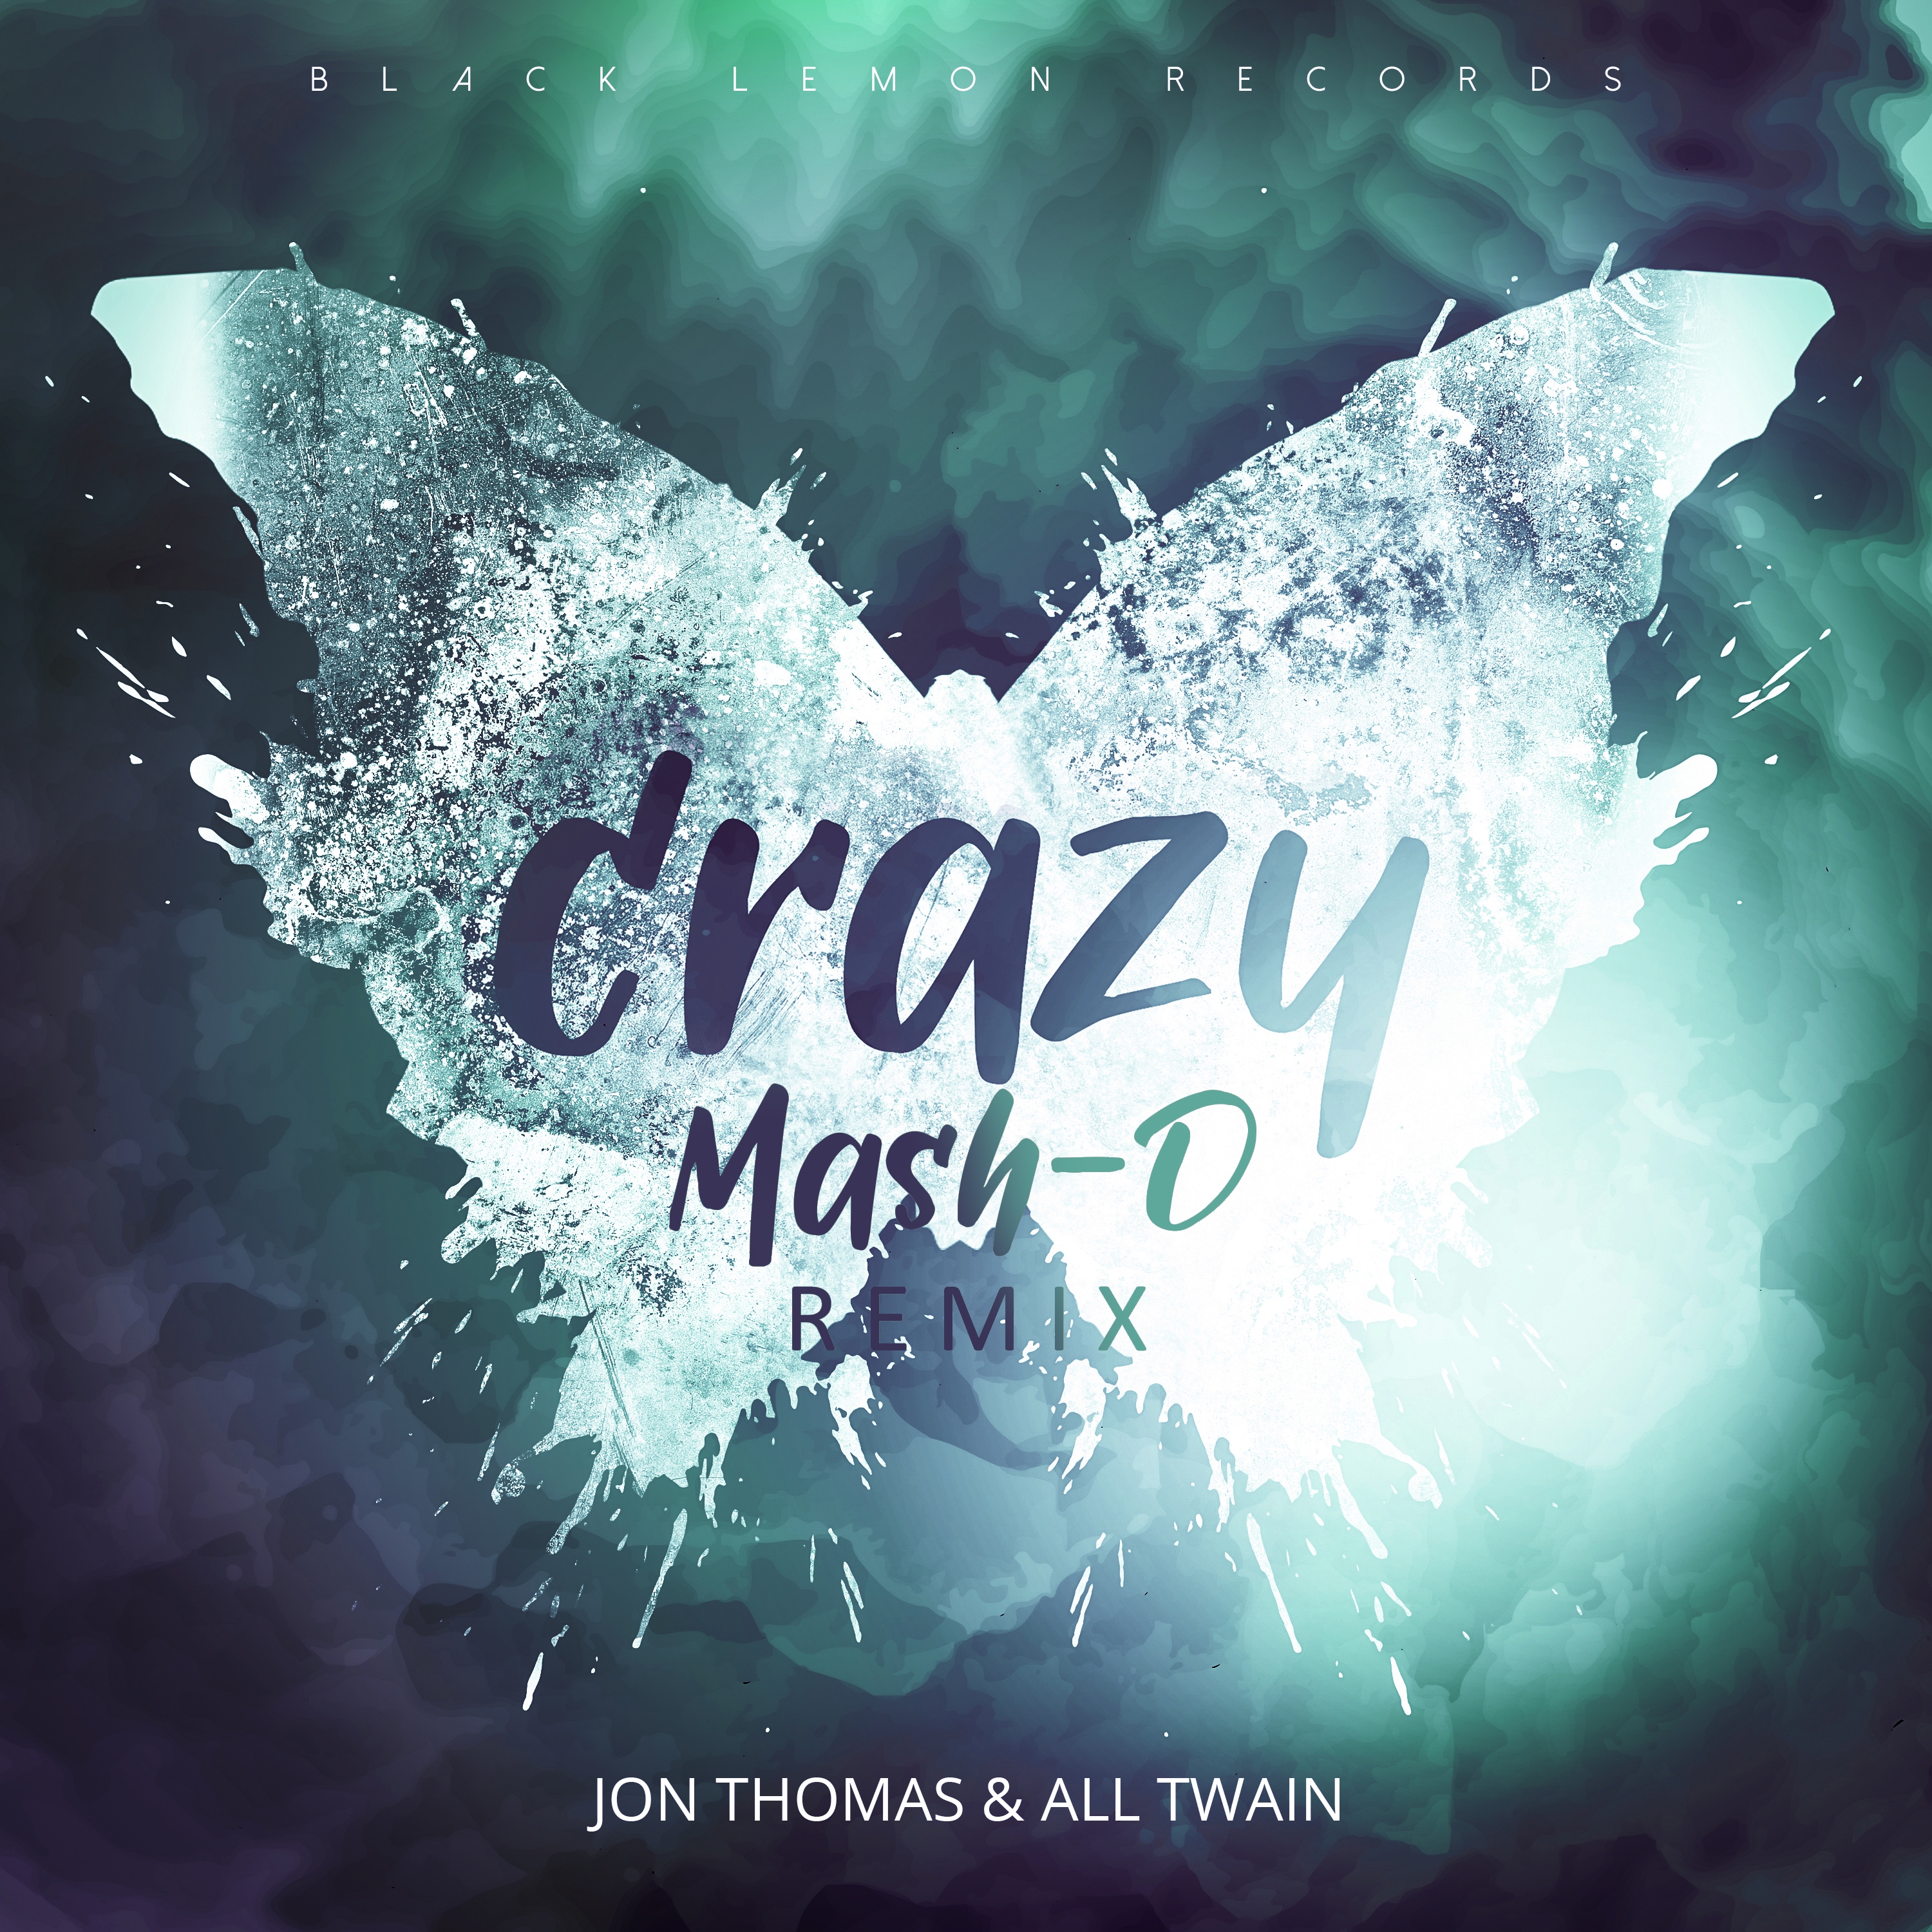 Crazy (Mash-D Remix)